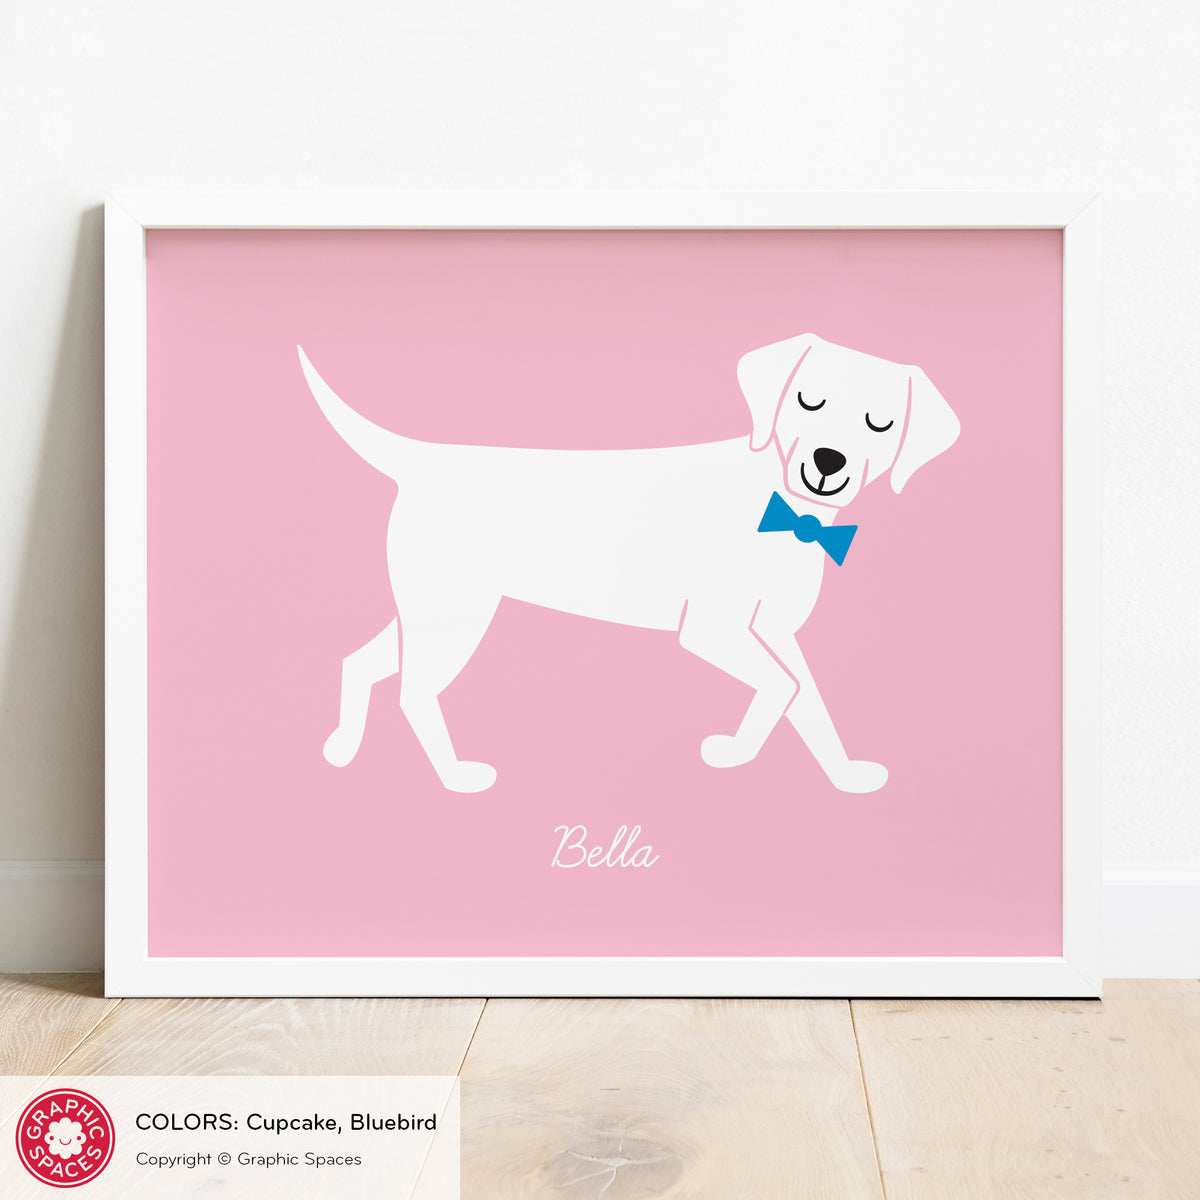 Labrador Retriever Dog Art Print